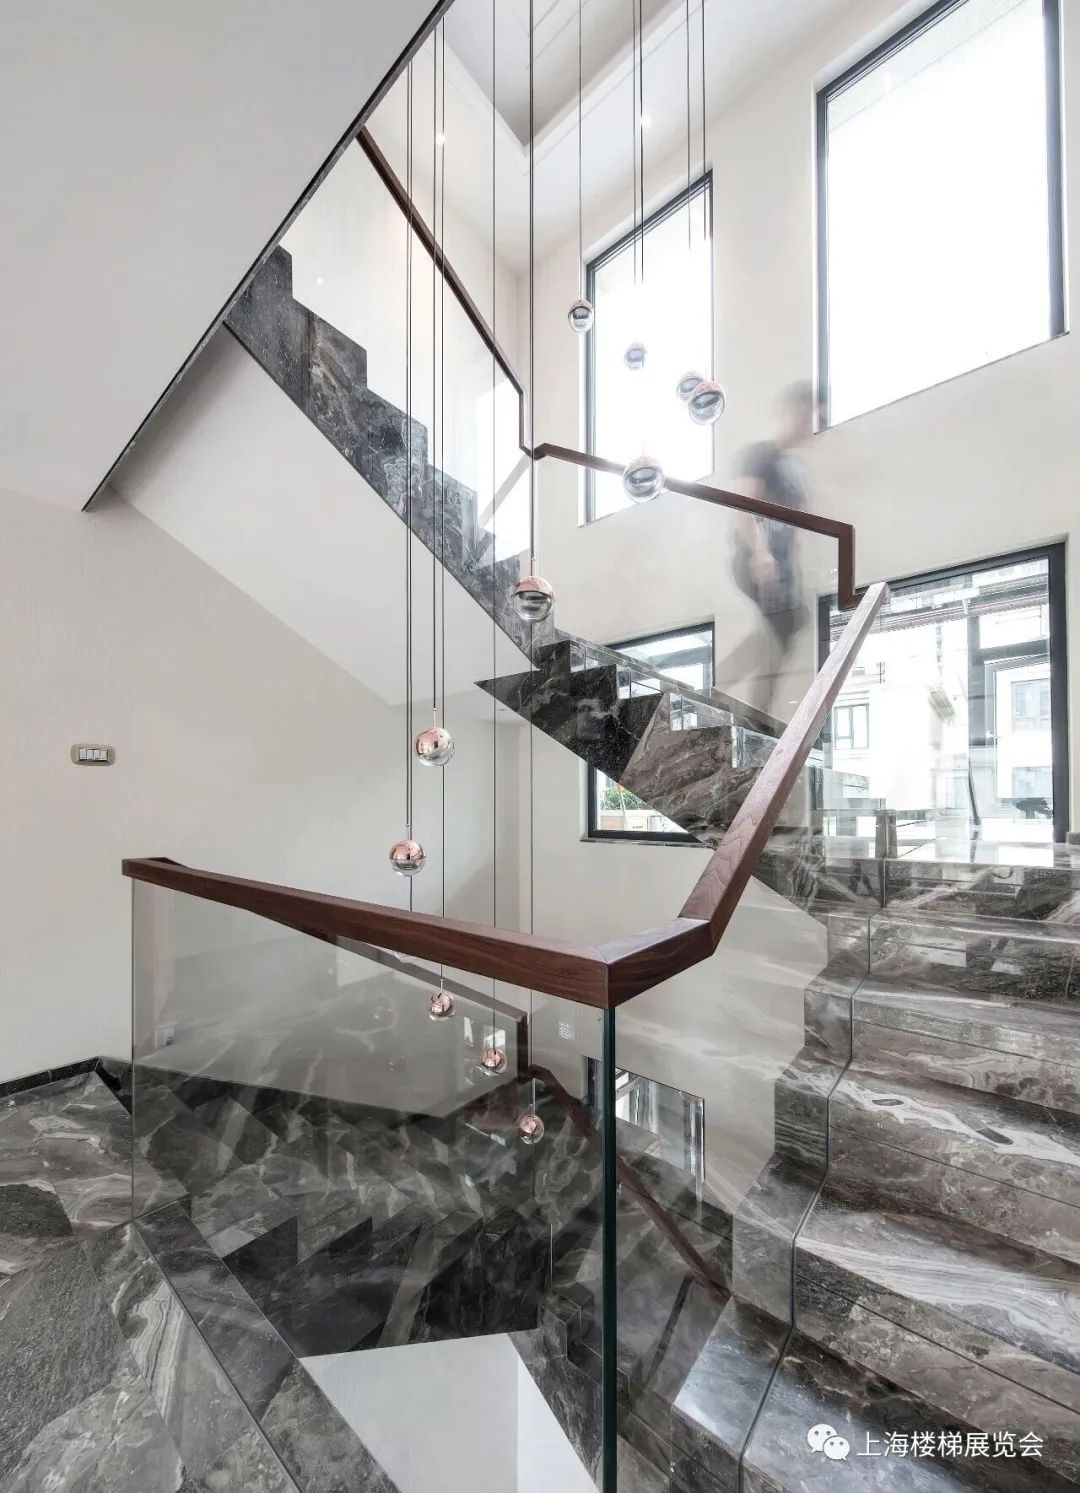 因为这也是玻璃楼梯与众不同的视觉效果属性之一